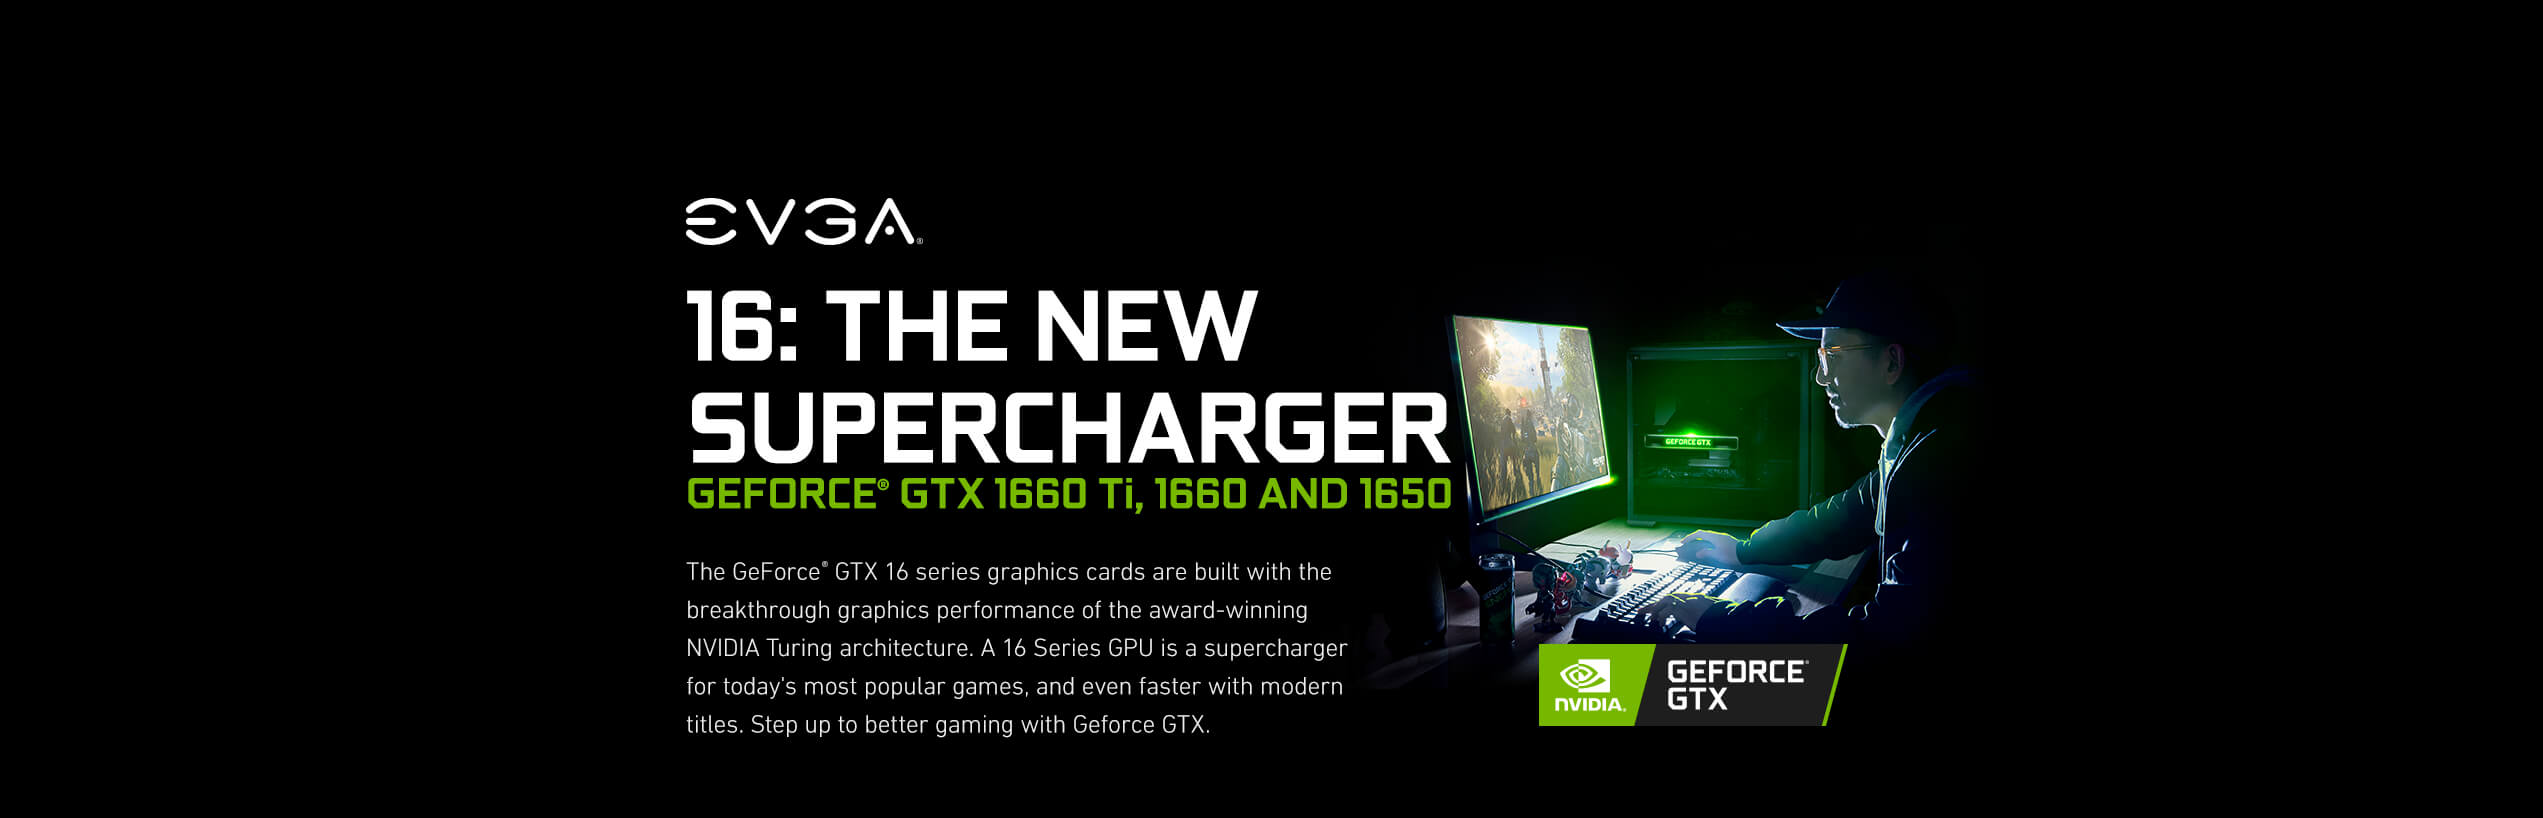 EVGA GeForce GTX 16 Series Gaming